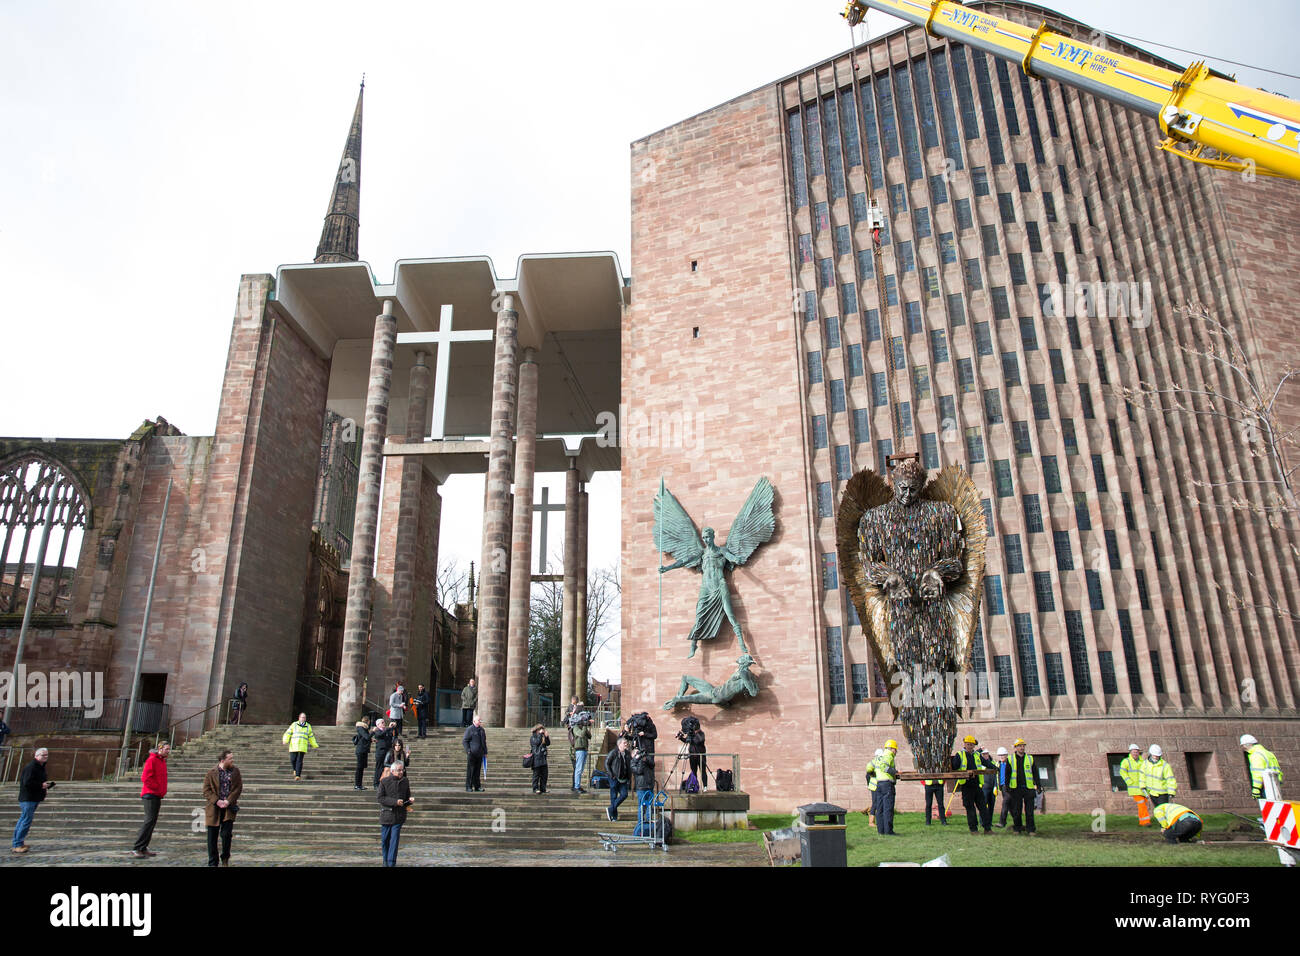 Ein Messer Engel Skulptur, aus 100.000 beschlagnahmte Messer, ist in der Kathedrale von Coventry installiert. Die 27 Meter hohe Kunstwerk, geschaffen von der Künstlerin Alfie Bradley, beginnt seinen Wohnsitz an der Kathedrale bis April 23' als physische Erinnerung an die Auswirkungen von Gewalt und Aggression". Coventry Cathedral, Priory Street, Coventry. Stockfoto